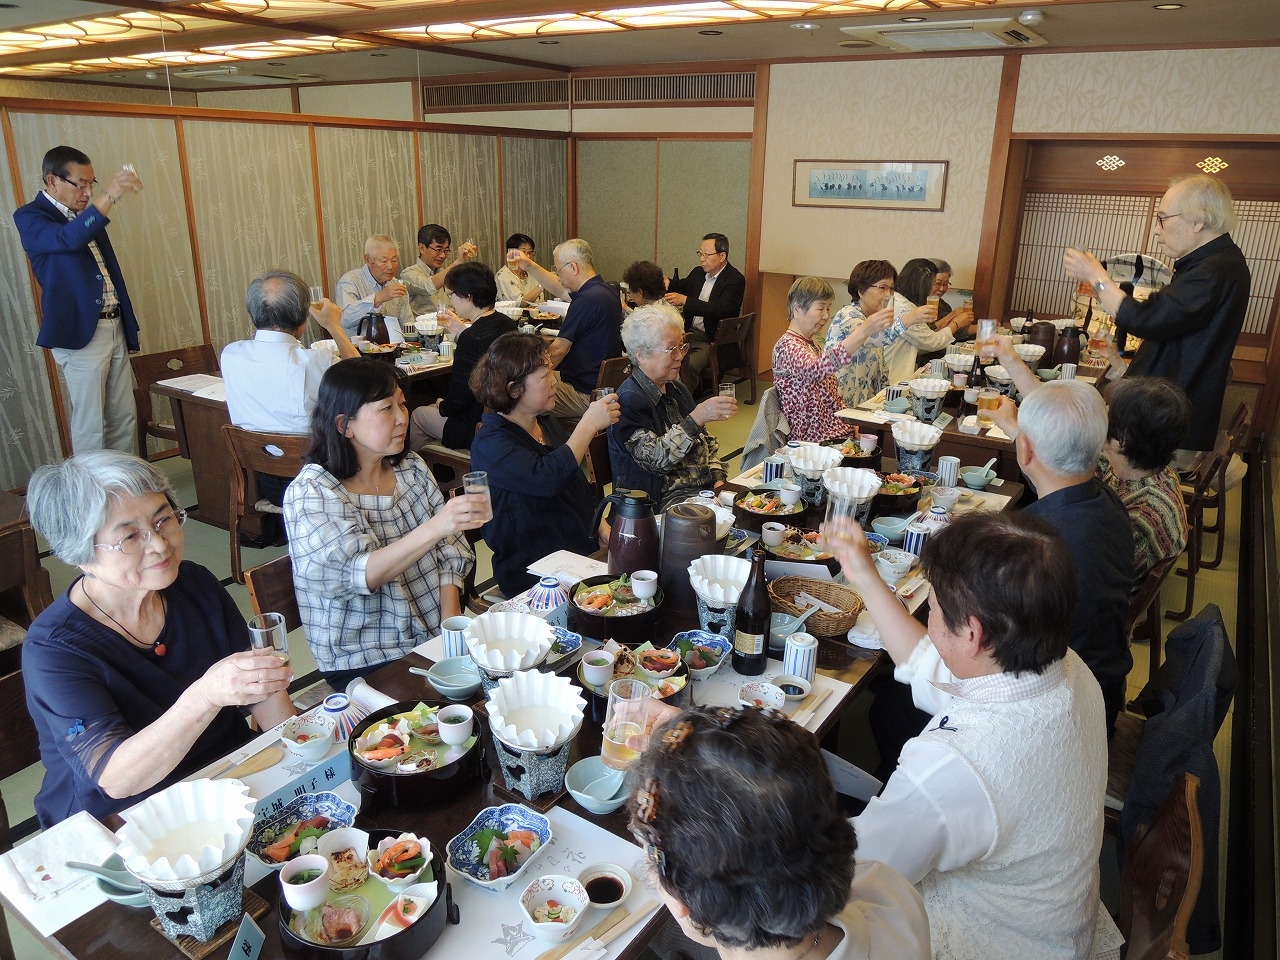 합장묘를 운영하는 일본 효고현 고령자생활협동조합이 매년 2회 개최하는 점심 모임의 모습. 효고현 고령자생활협동조합 홈페이지 캡처